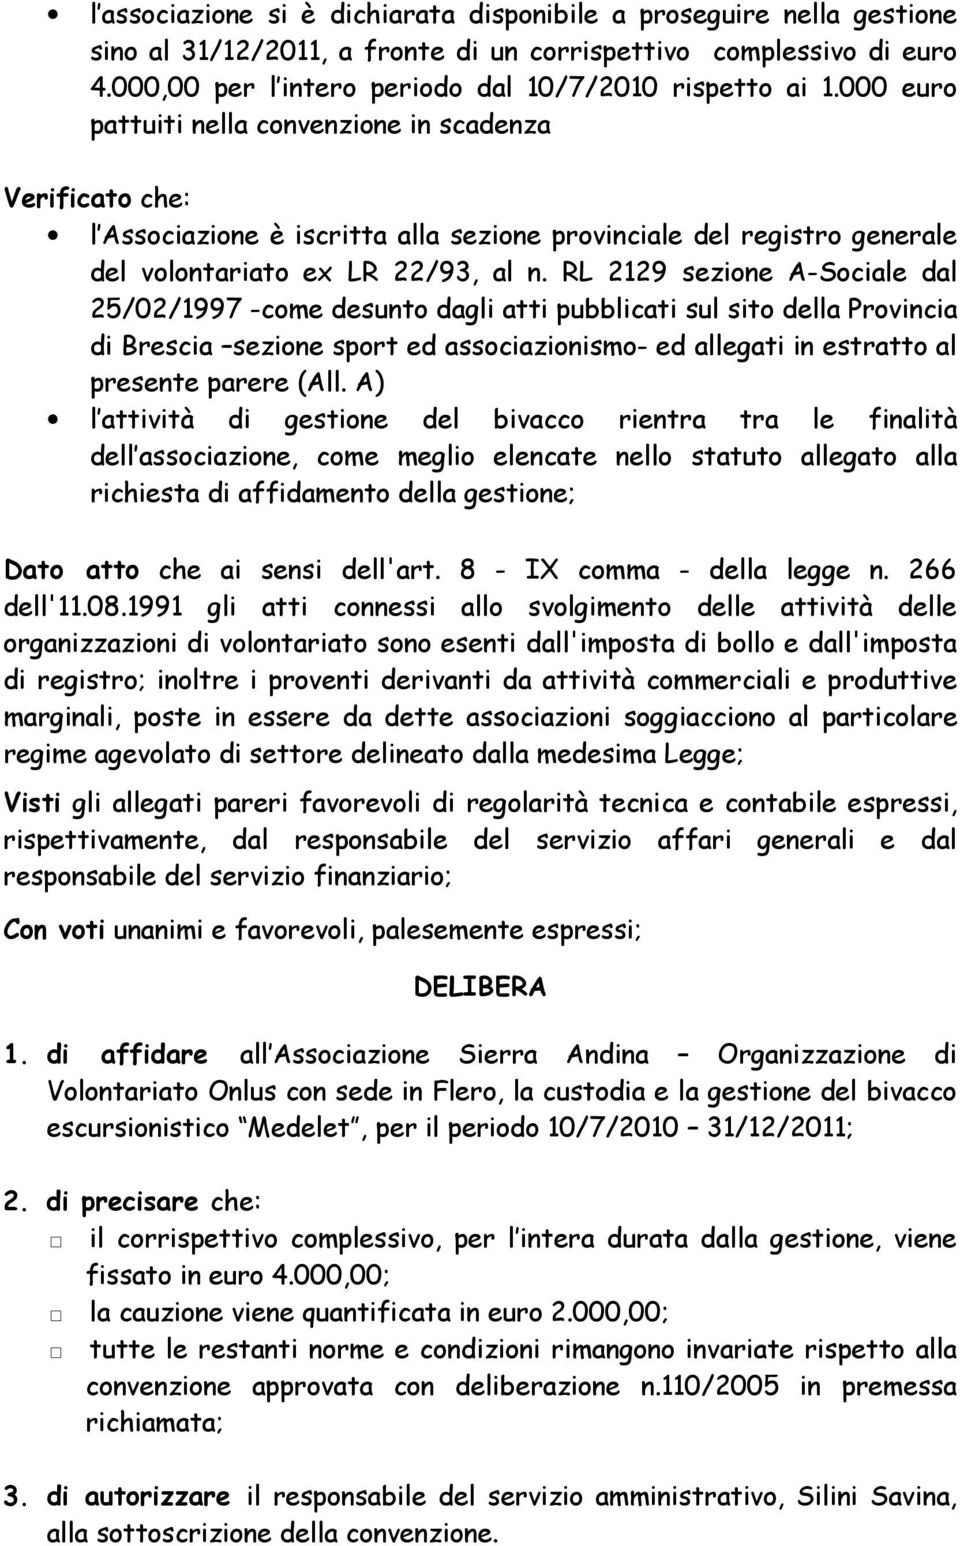 RL 2129 sezione A-Sociale dal 25/02/1997 -come desunto dagli atti pubblicati sul sito della Provincia di Brescia sezione sport ed associazionismo- ed allegati in estratto al presente parere (All.